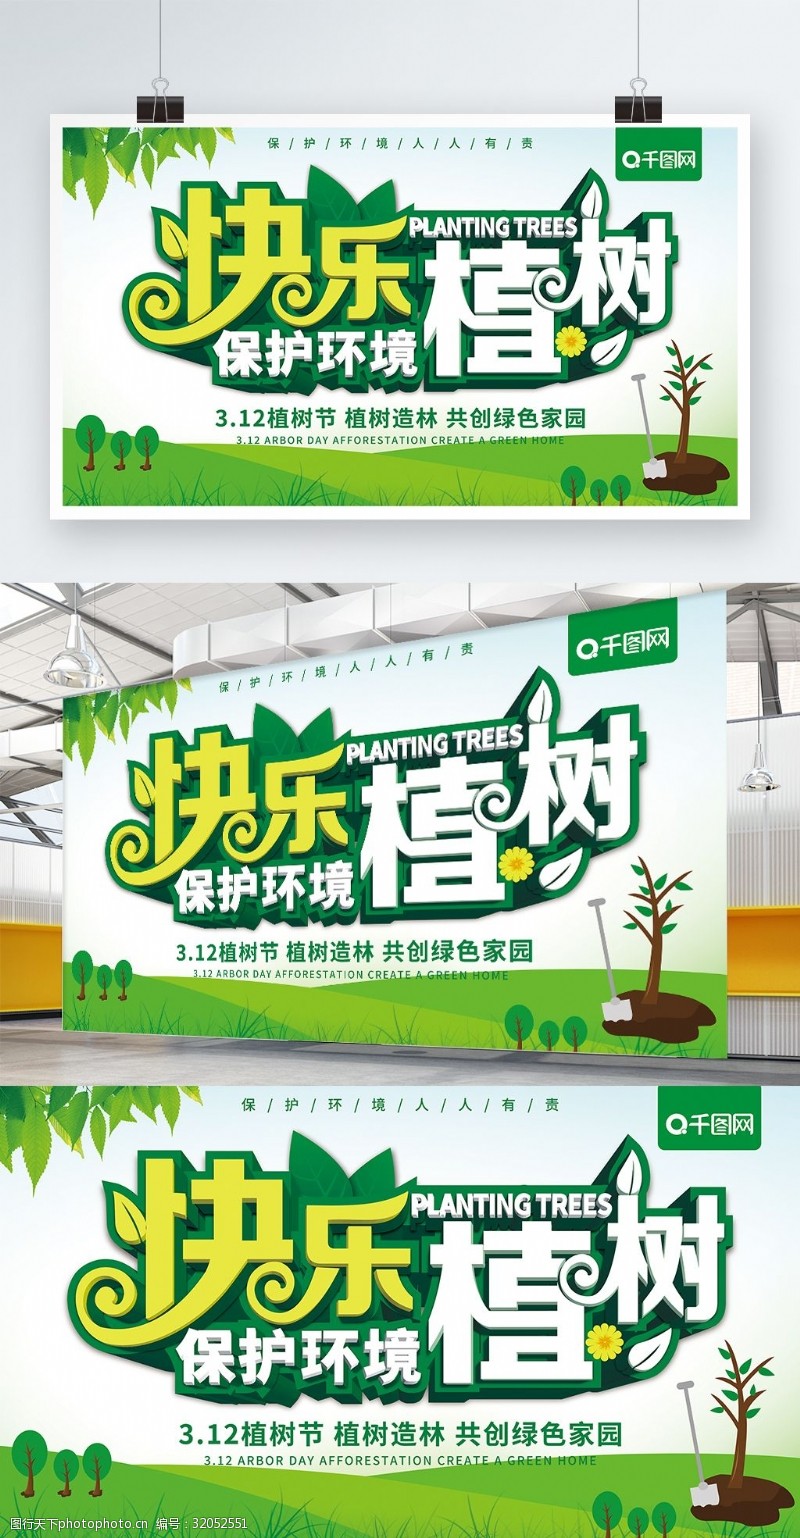 公益植树节原创快乐植树保护环境宣传展板